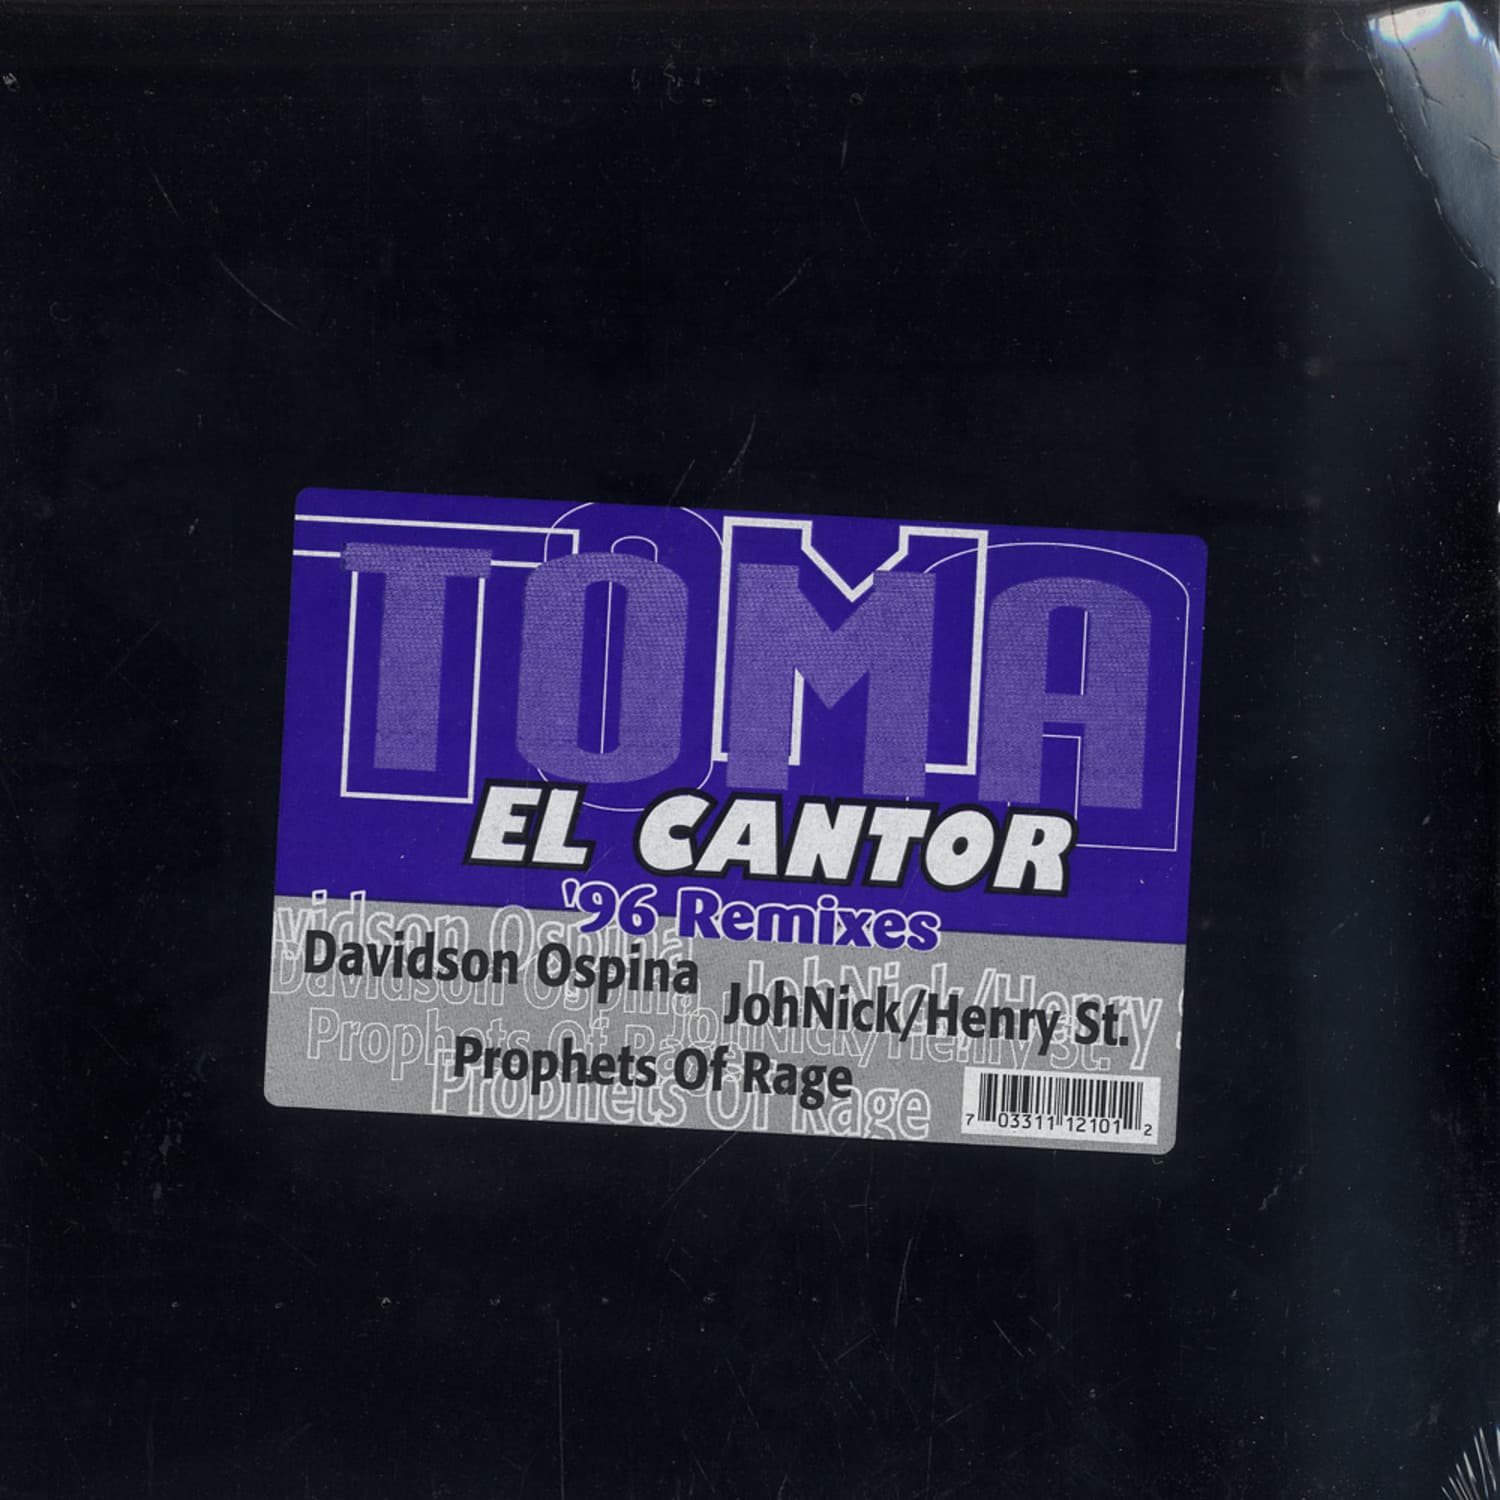 El Cantor - TOMA 96 REMIXES